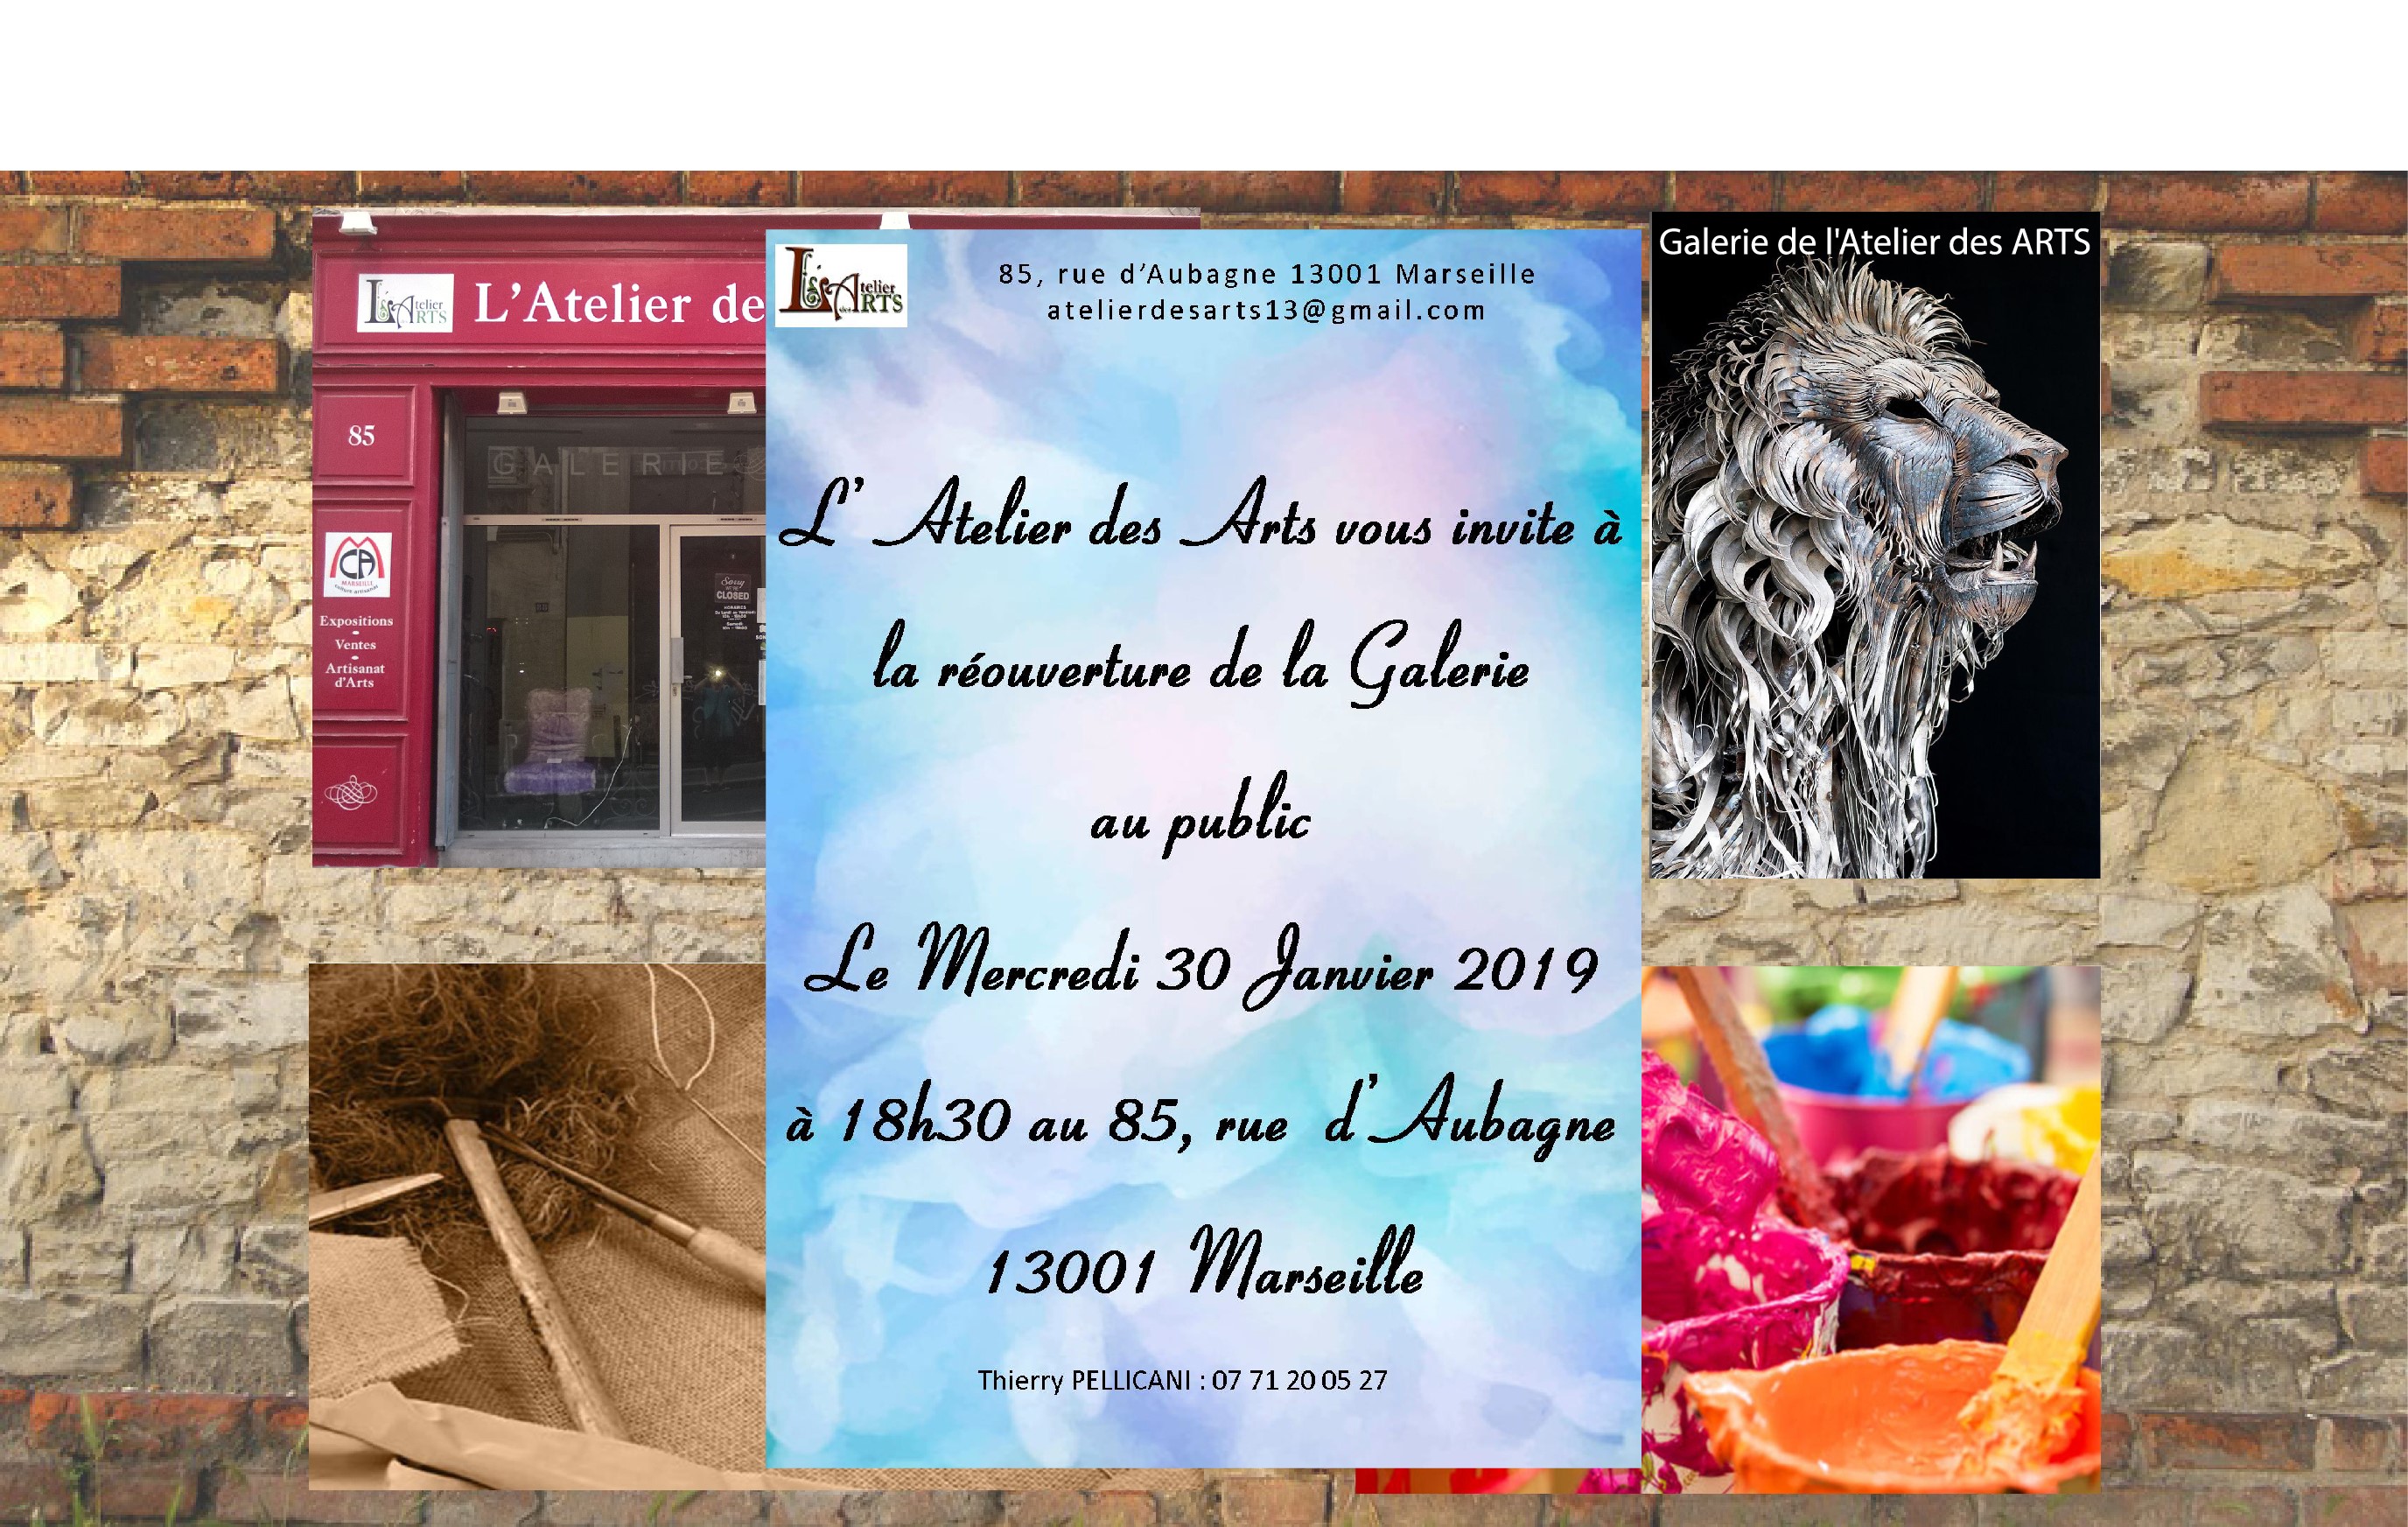 Rue d’Aubagne : Réouverture de la Galerie de l’Atelier des ARTS au Public mercredi 30 janvier à 18h30